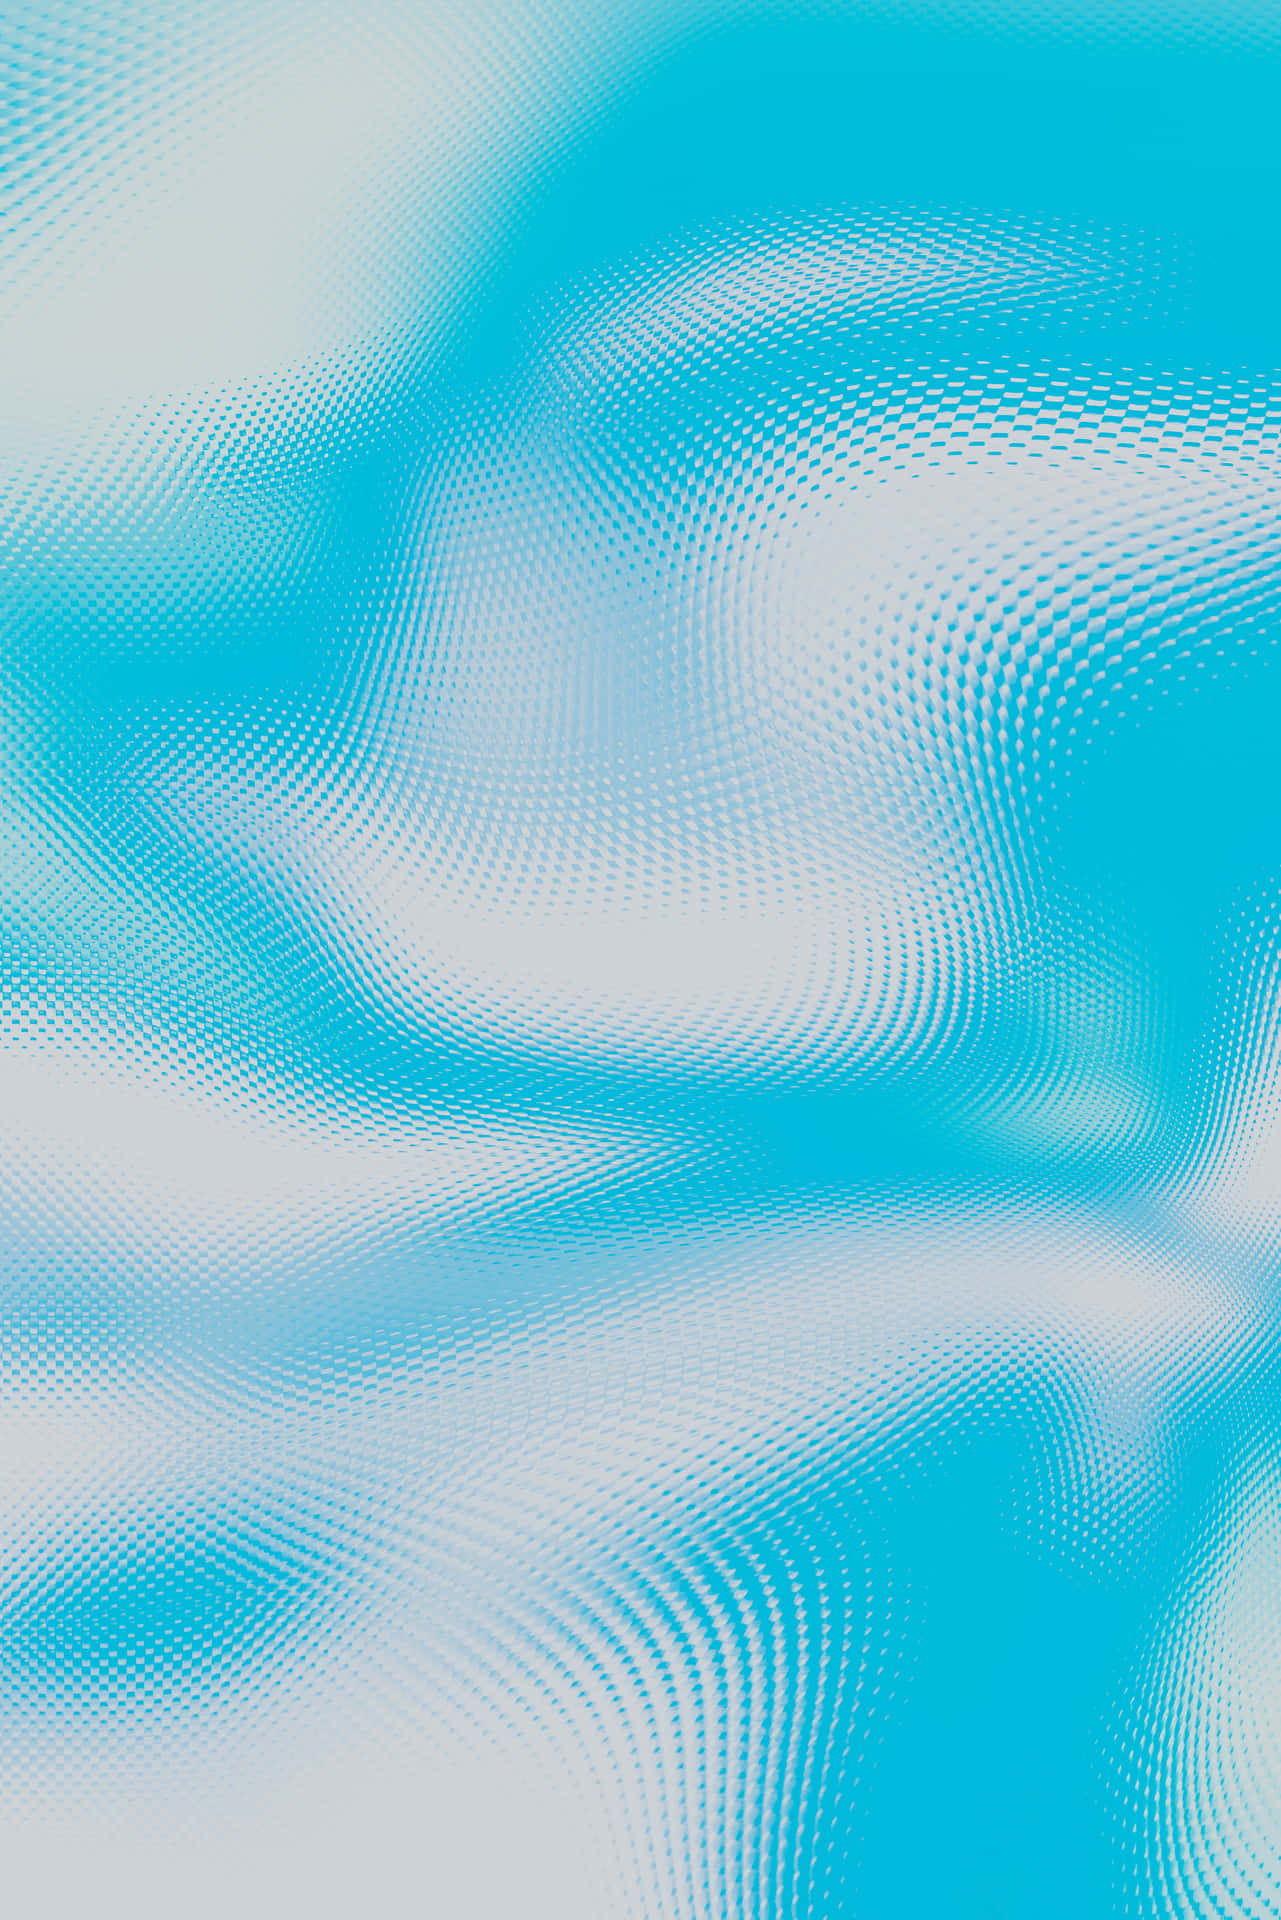 Einleuchtender Und Ruhiger, Kühler Hintergrund In Sanftem, Schönem Lichtblau. Wallpaper